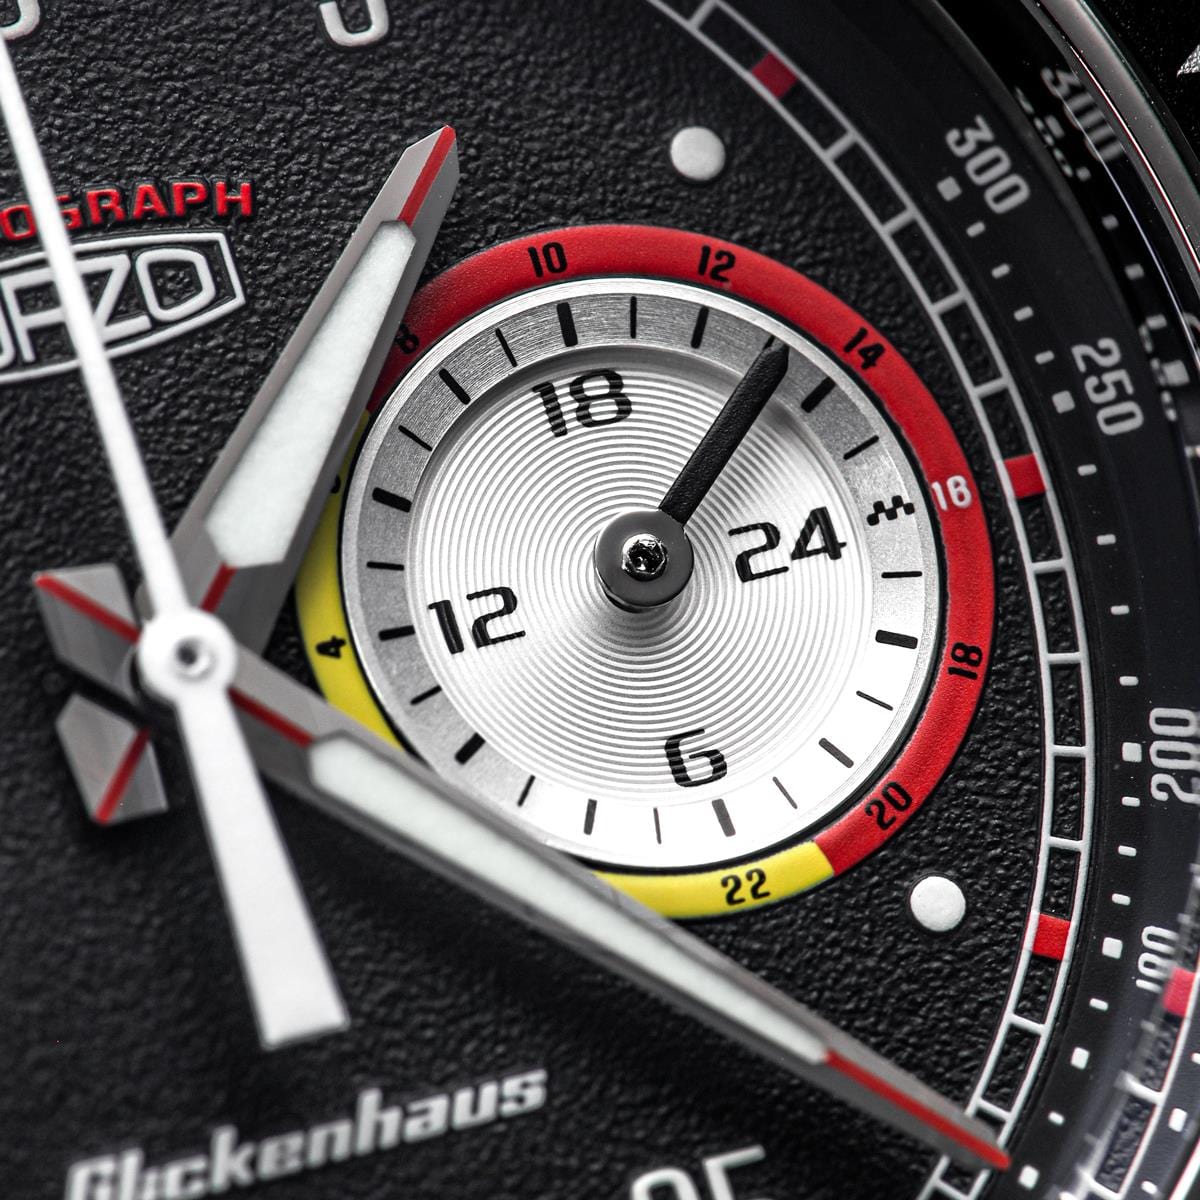 FORZO Glickenhaus Chronograph Black & Red SS-B01-B